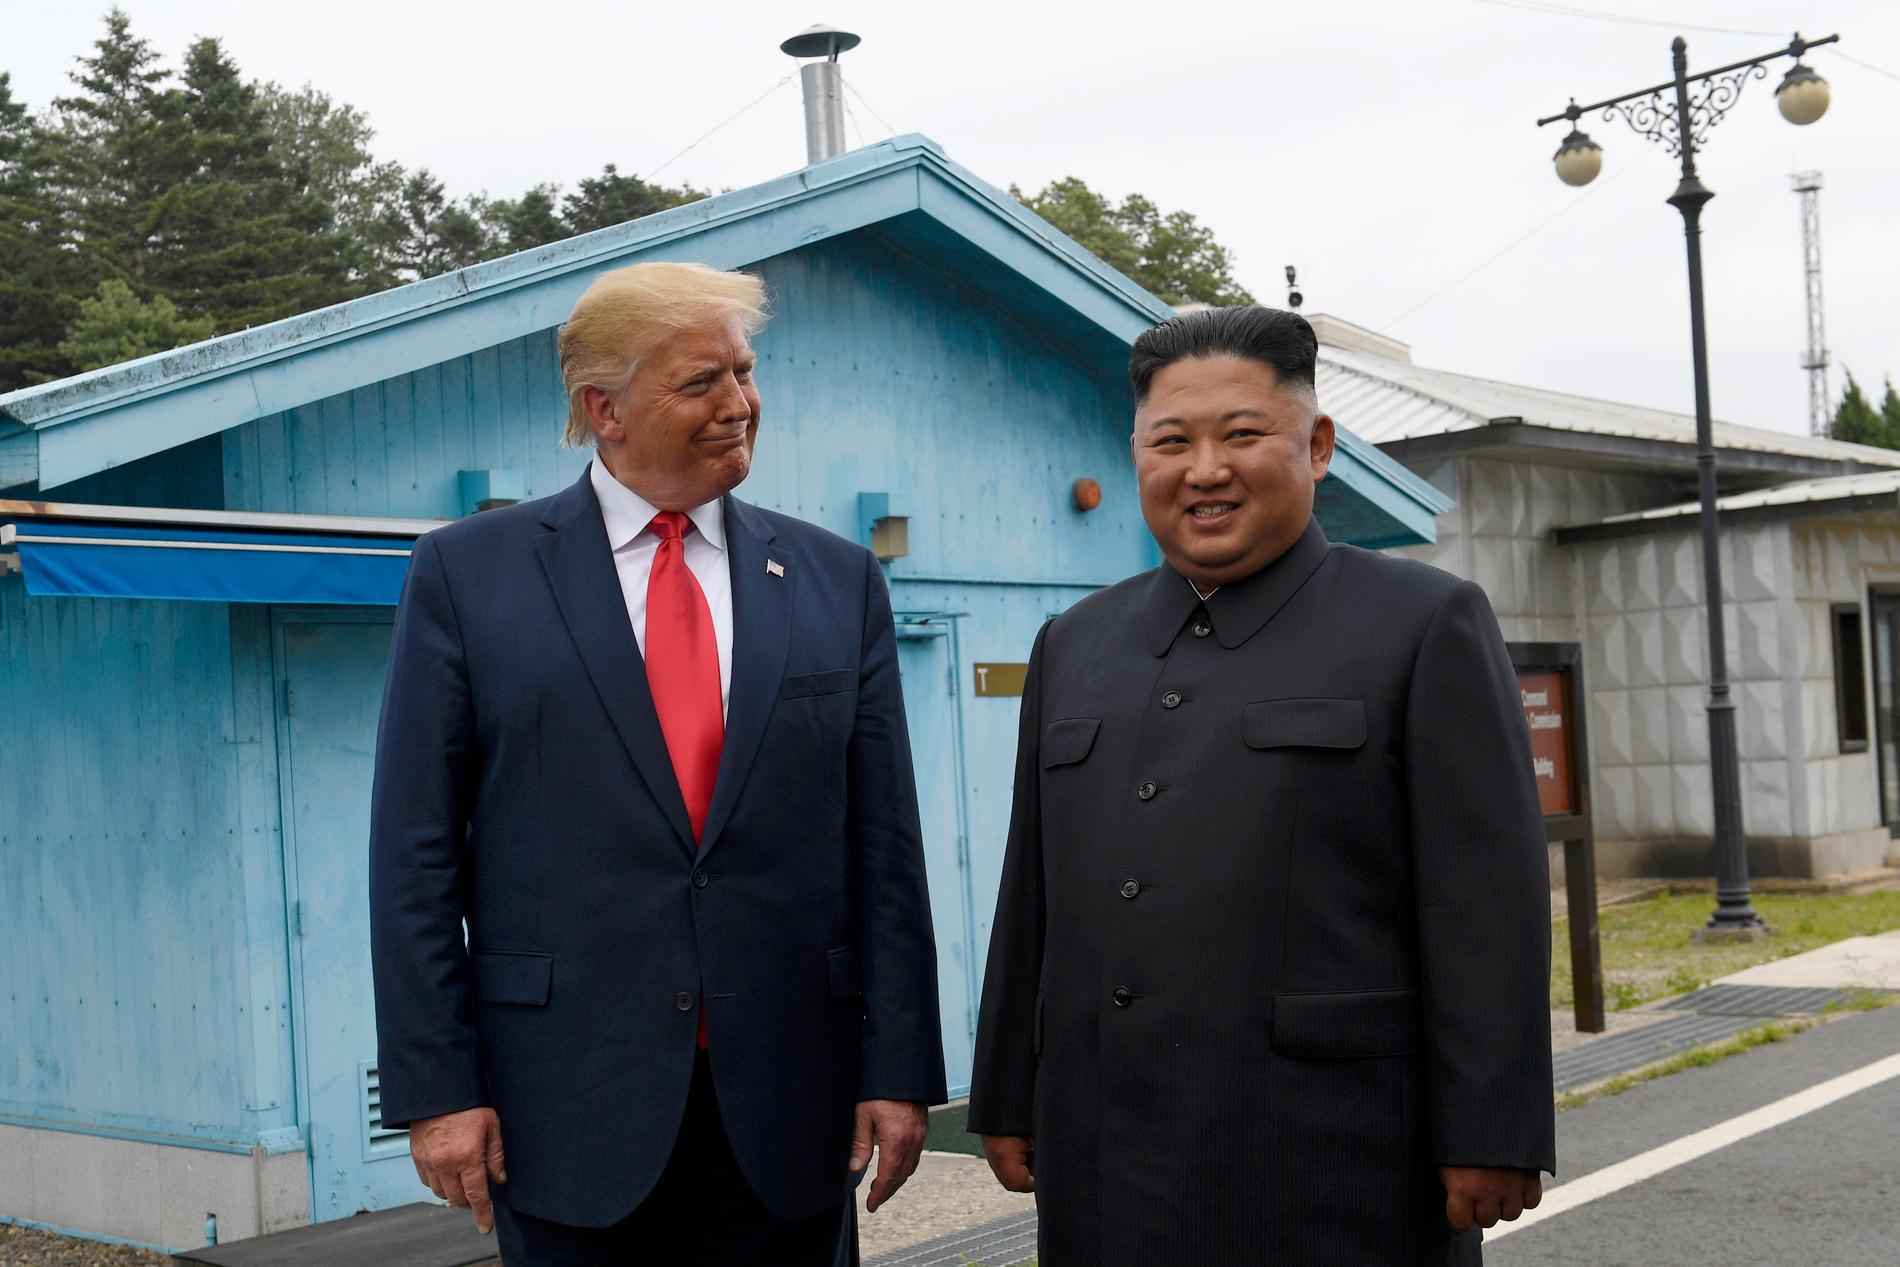 President Donald Trump och Nordkoreas högste ledare Kim Jong-Un möts i den avmilitariserade zonen på Koreahalvön, 30 juni 2019.